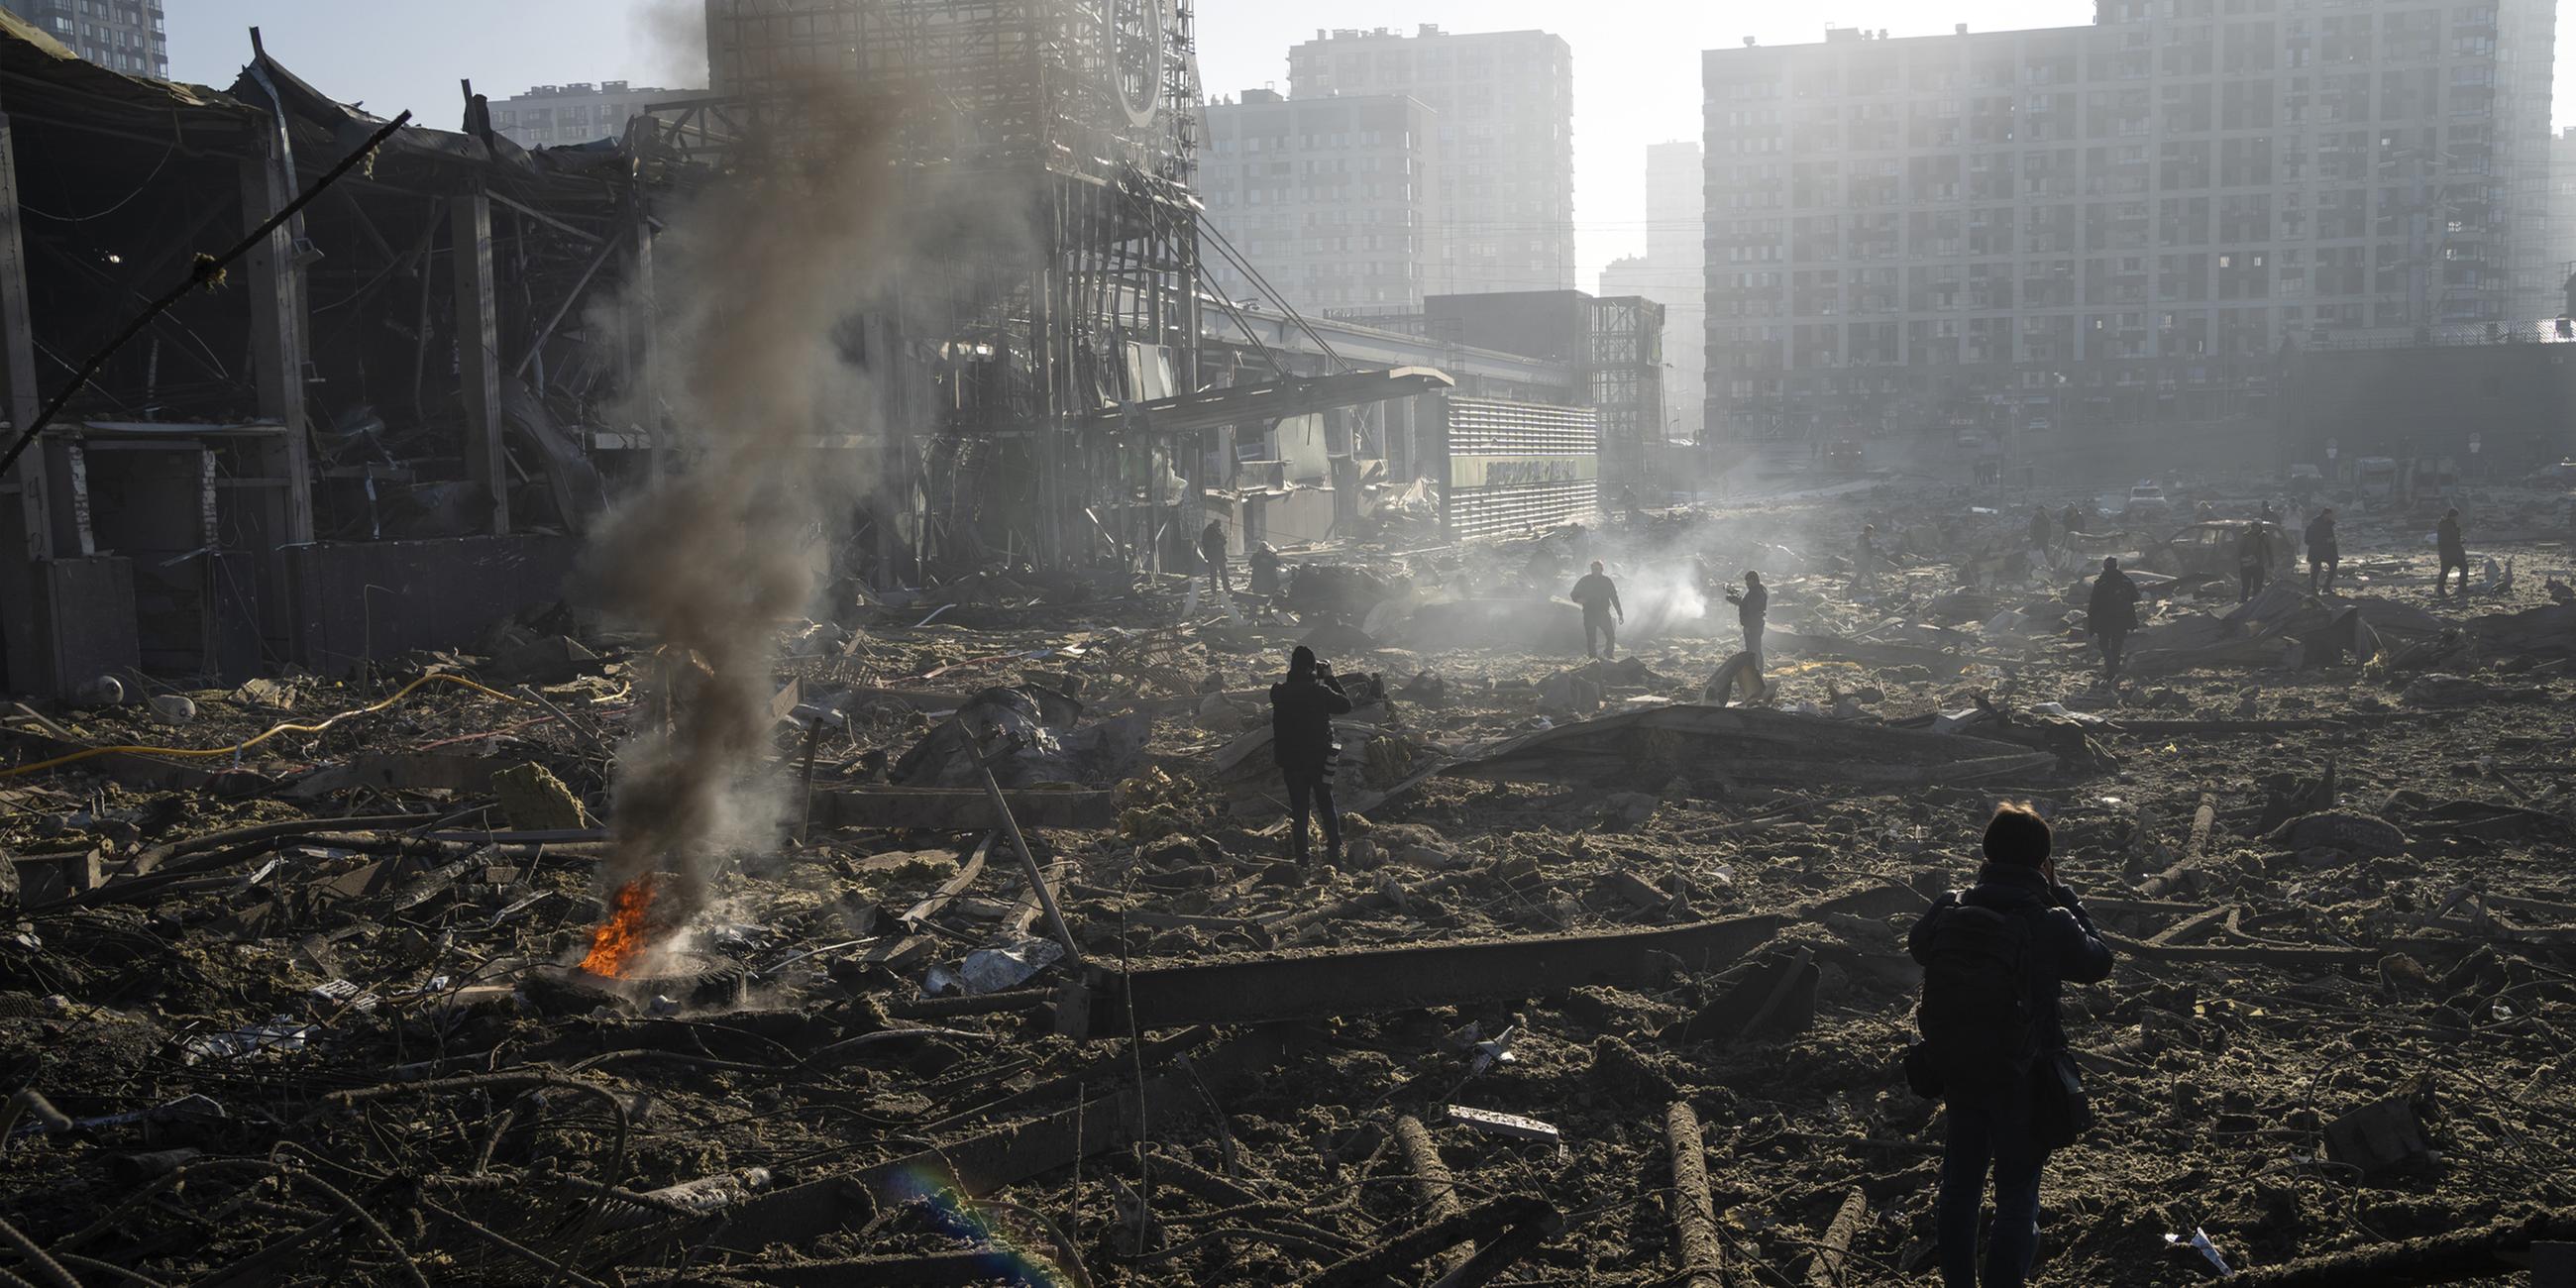 Archiv: Menschen gehen durch die rauchenden Trümmer inmitten der Zerstörung, die nach dem Beschuss eines Einkaufszentrums in Kiew entstanden ist. 